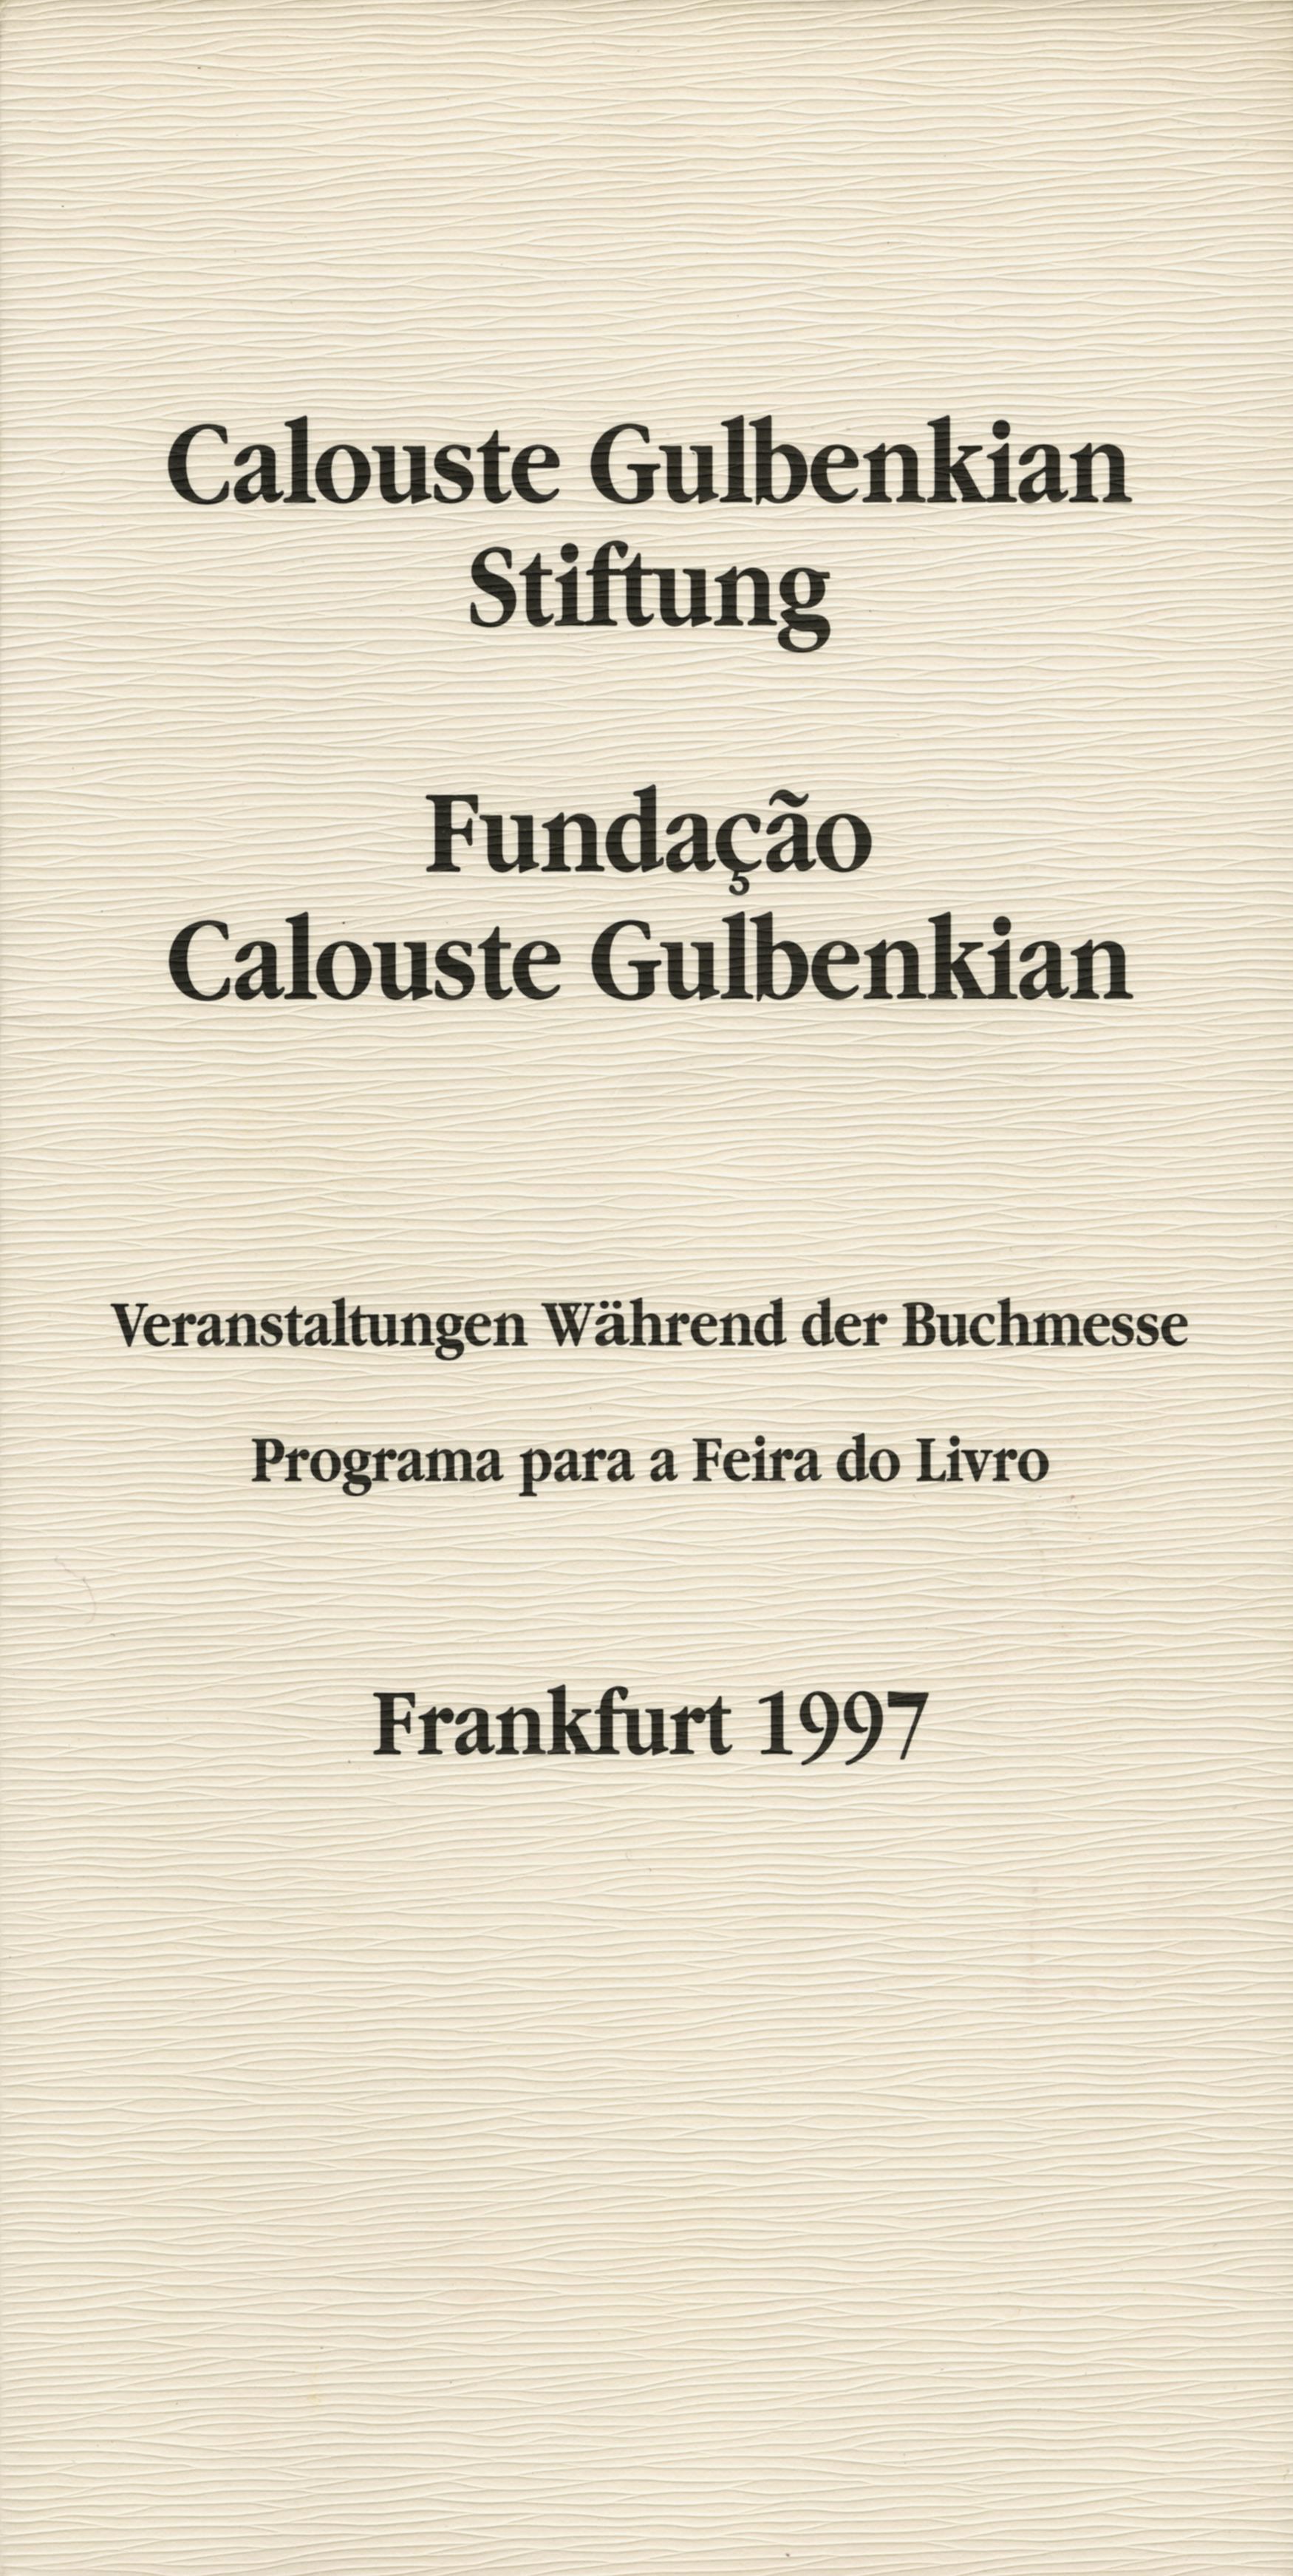 Fundação Calouste Gulbenkian. Feira do Livro. Frankfurt, 1997